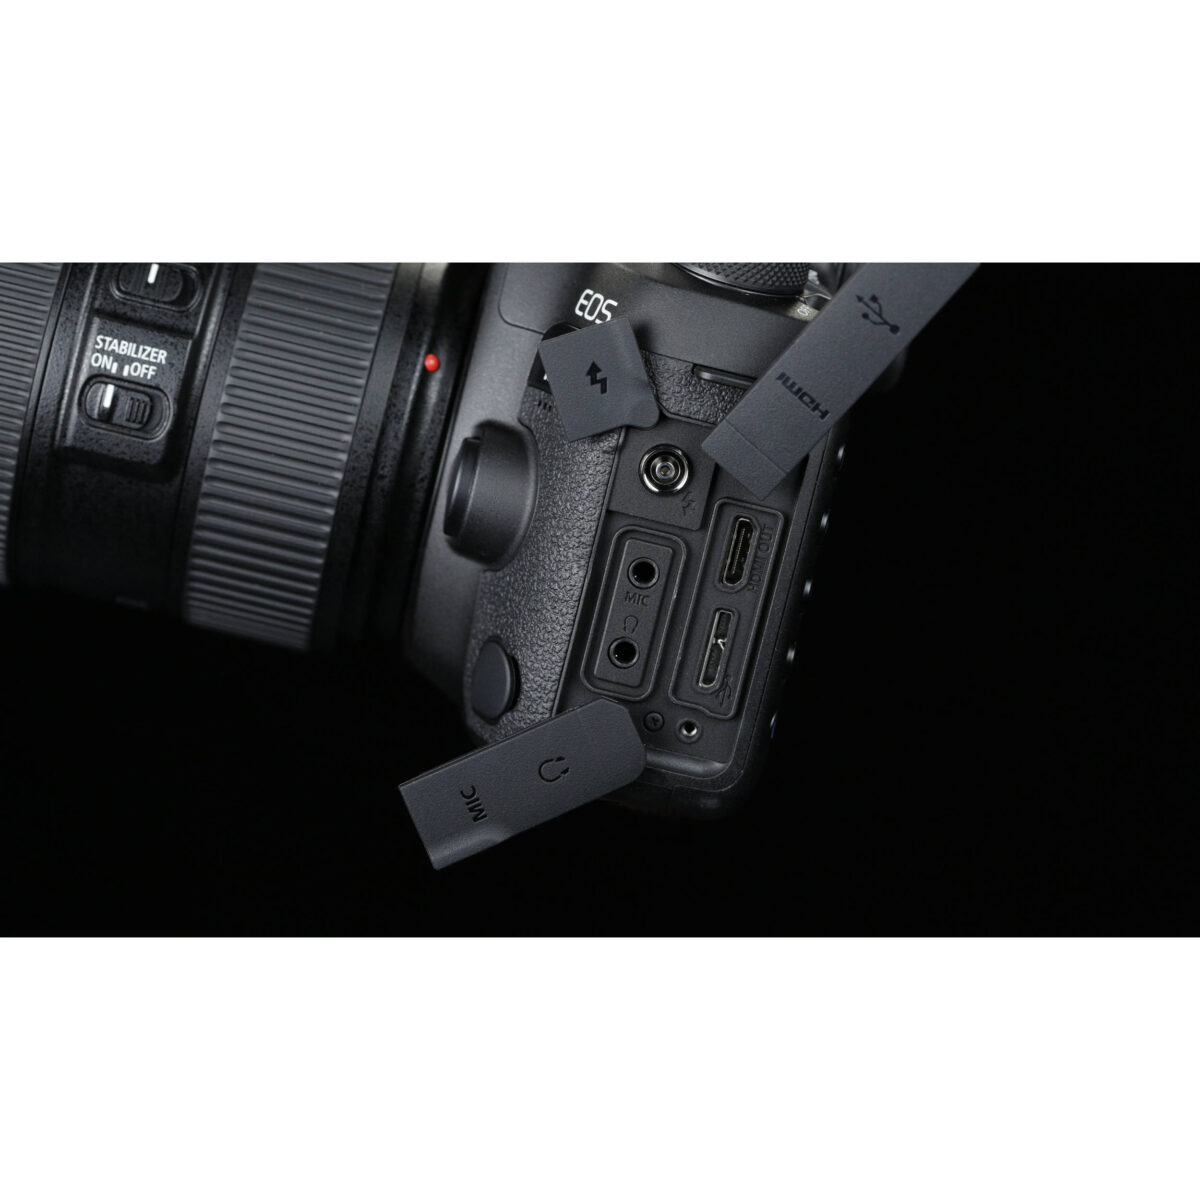 ارزان ترین دوربین دیجیتال کانن eos 5d mark IV - فروشگاه یزد کمرا